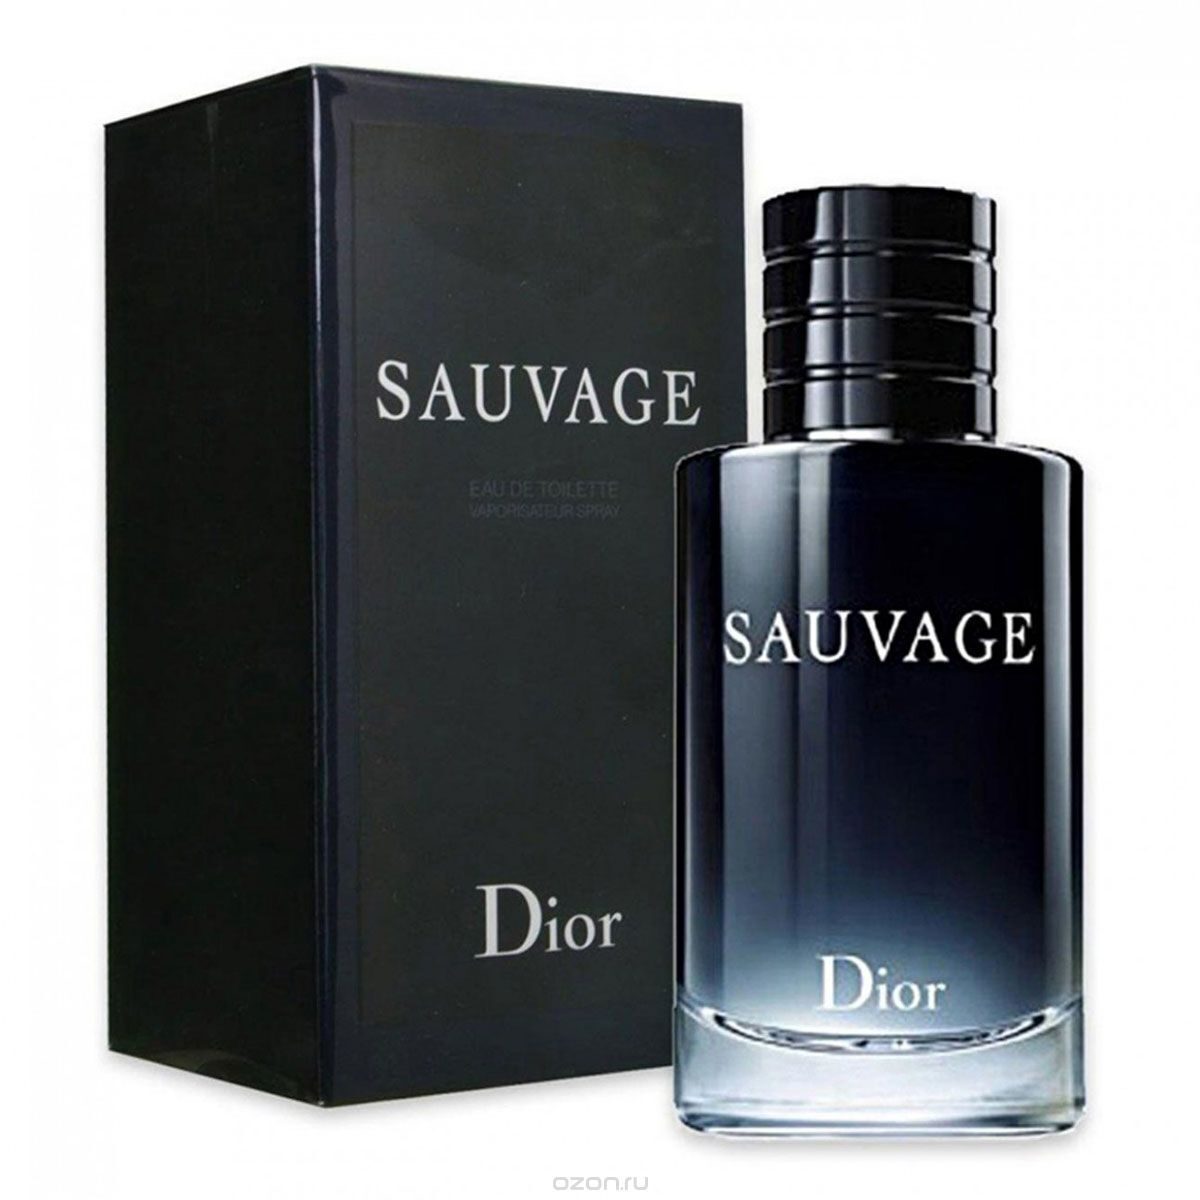 Мужские каталоги парфюмерии. Christian Dior sauvage 100 ml. Christian Dior sauvage EDT, 100 ml. Christian Dior sauvage, 100мл. Dior sauvage EDT 100ml.